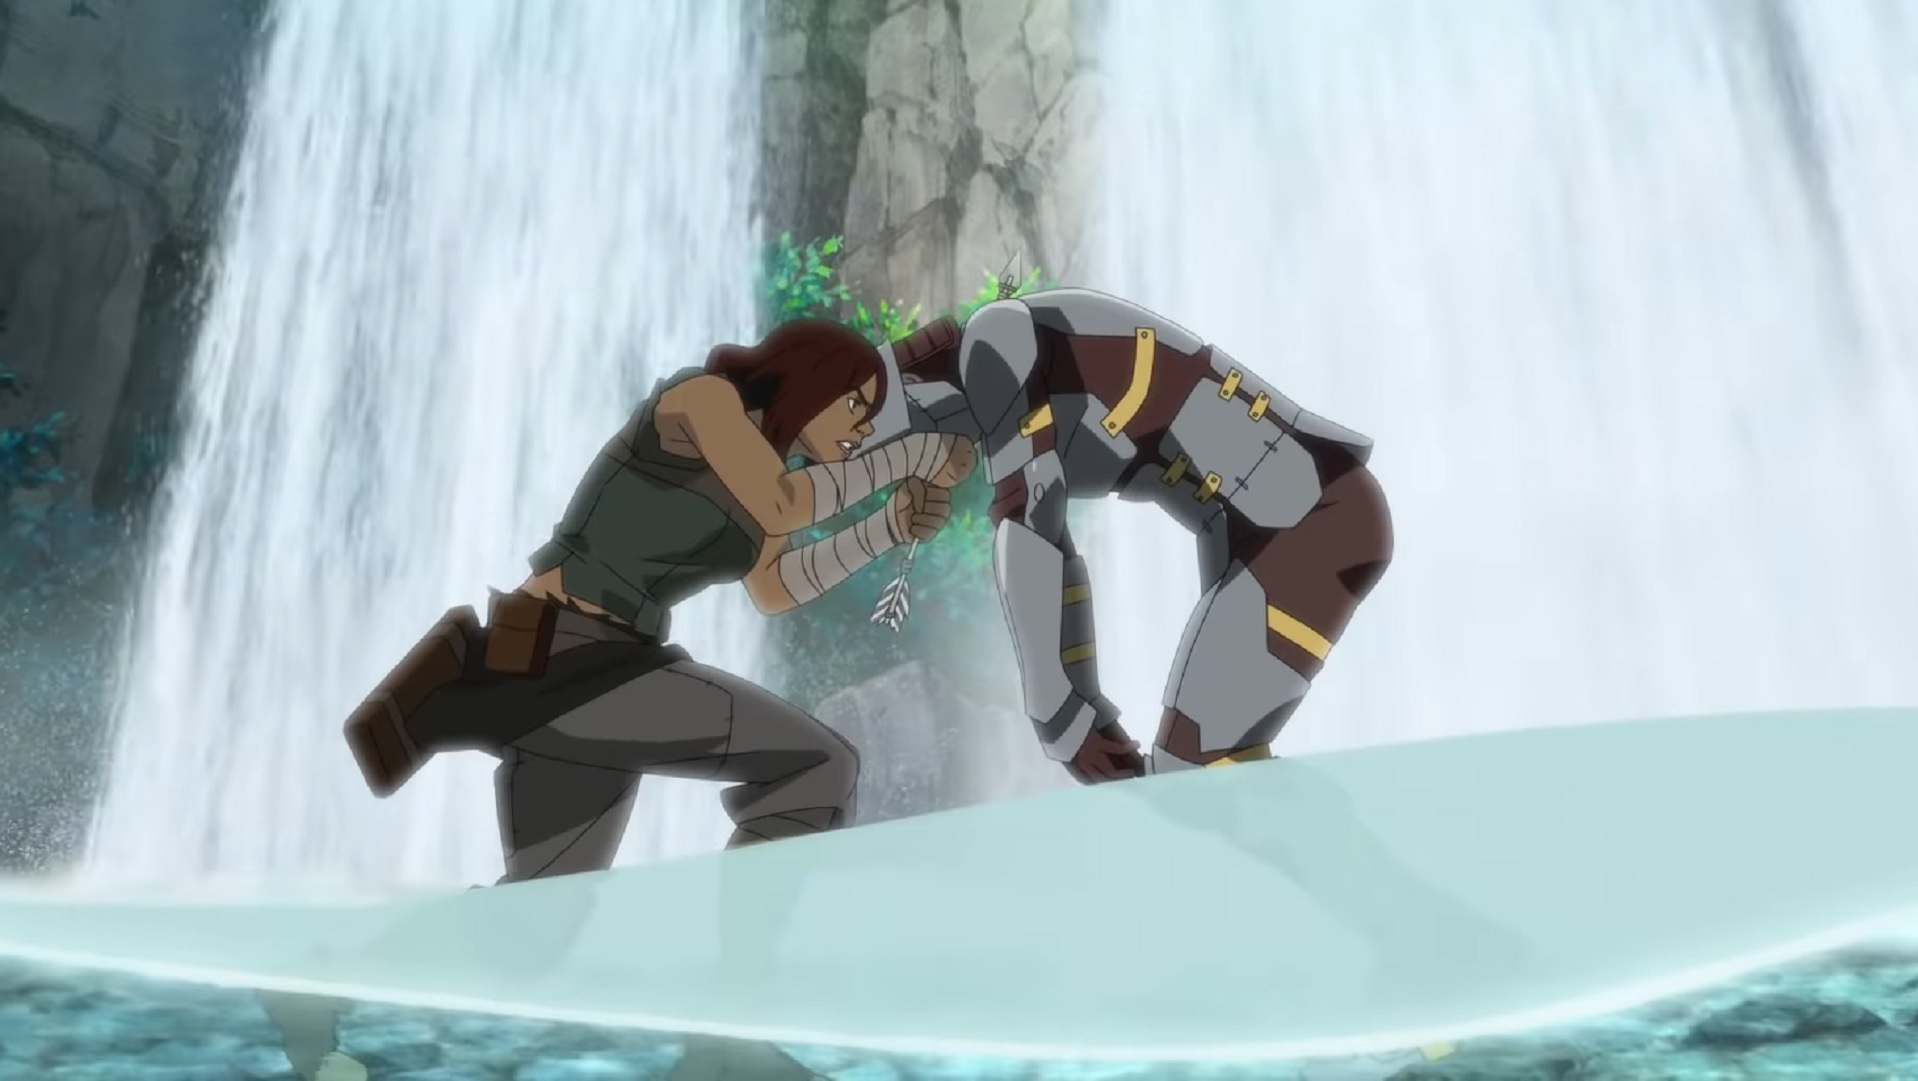 Ark show: dos personajes pelean frente a una cascada